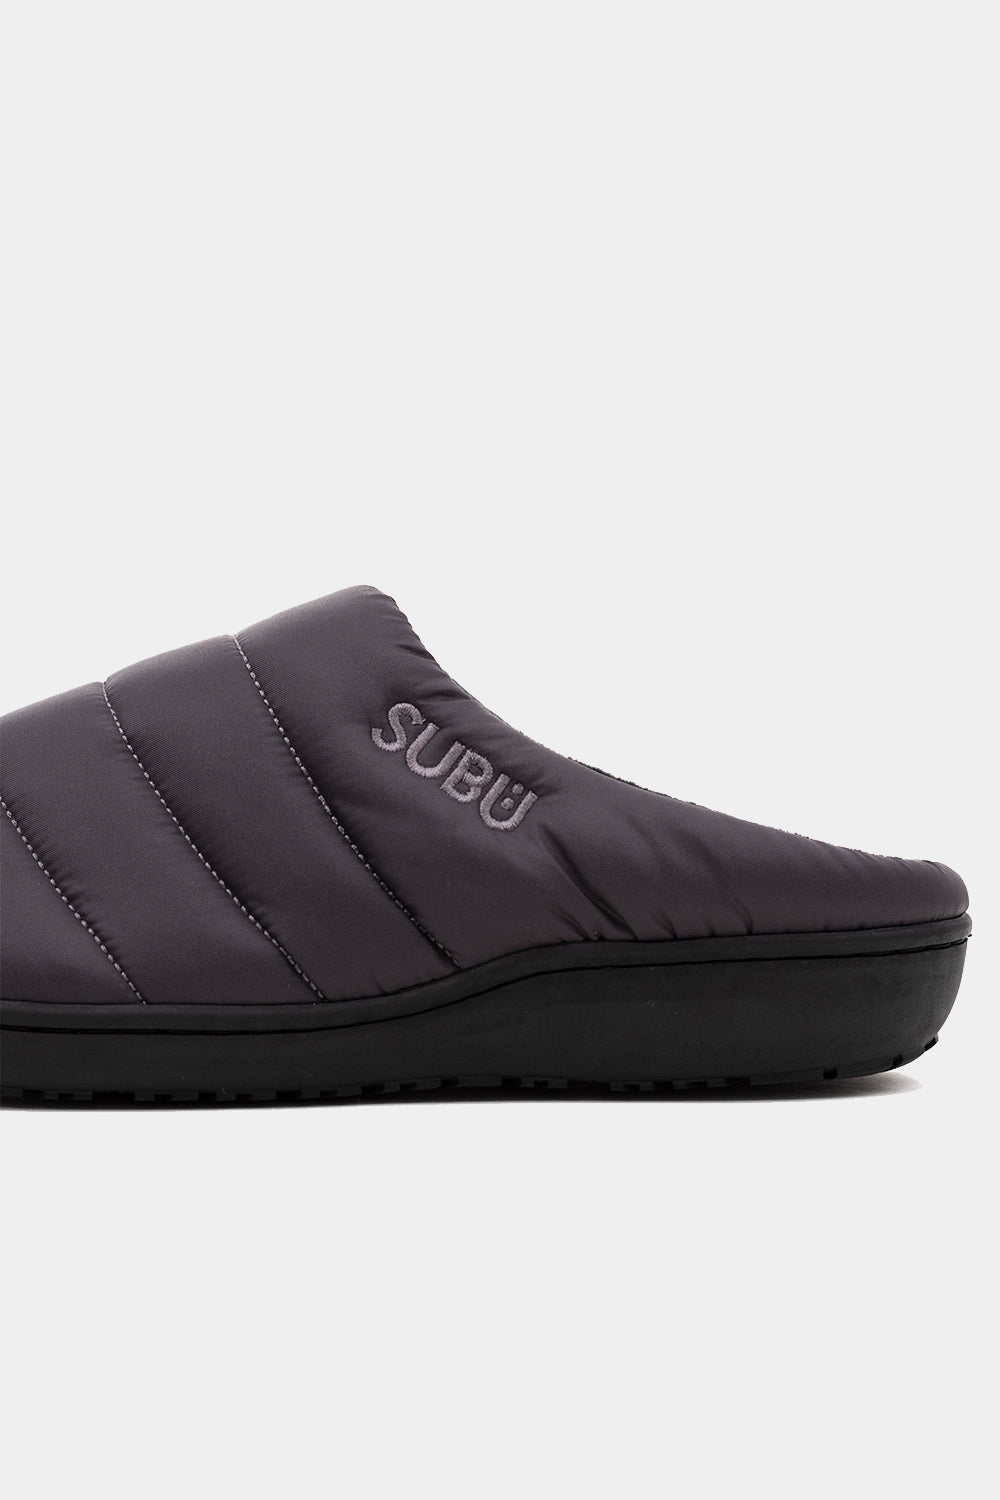 SUBU Indoor Outdoor Slippers (Steel Grey) | Number Six